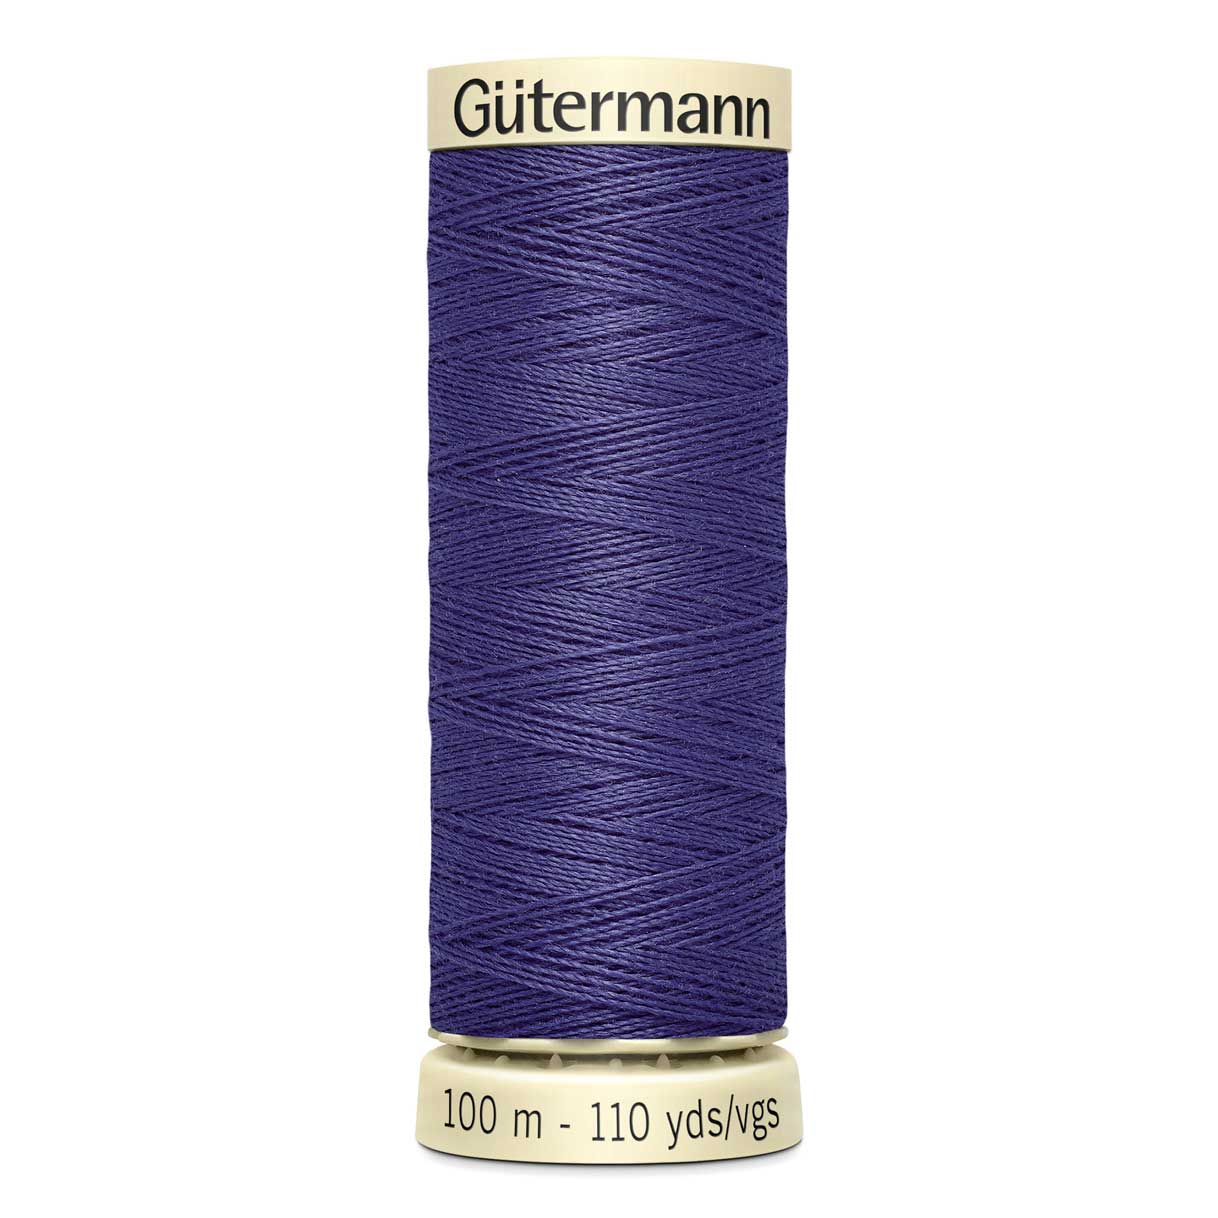 Gutermann Sew All Thread Colour 86 100m